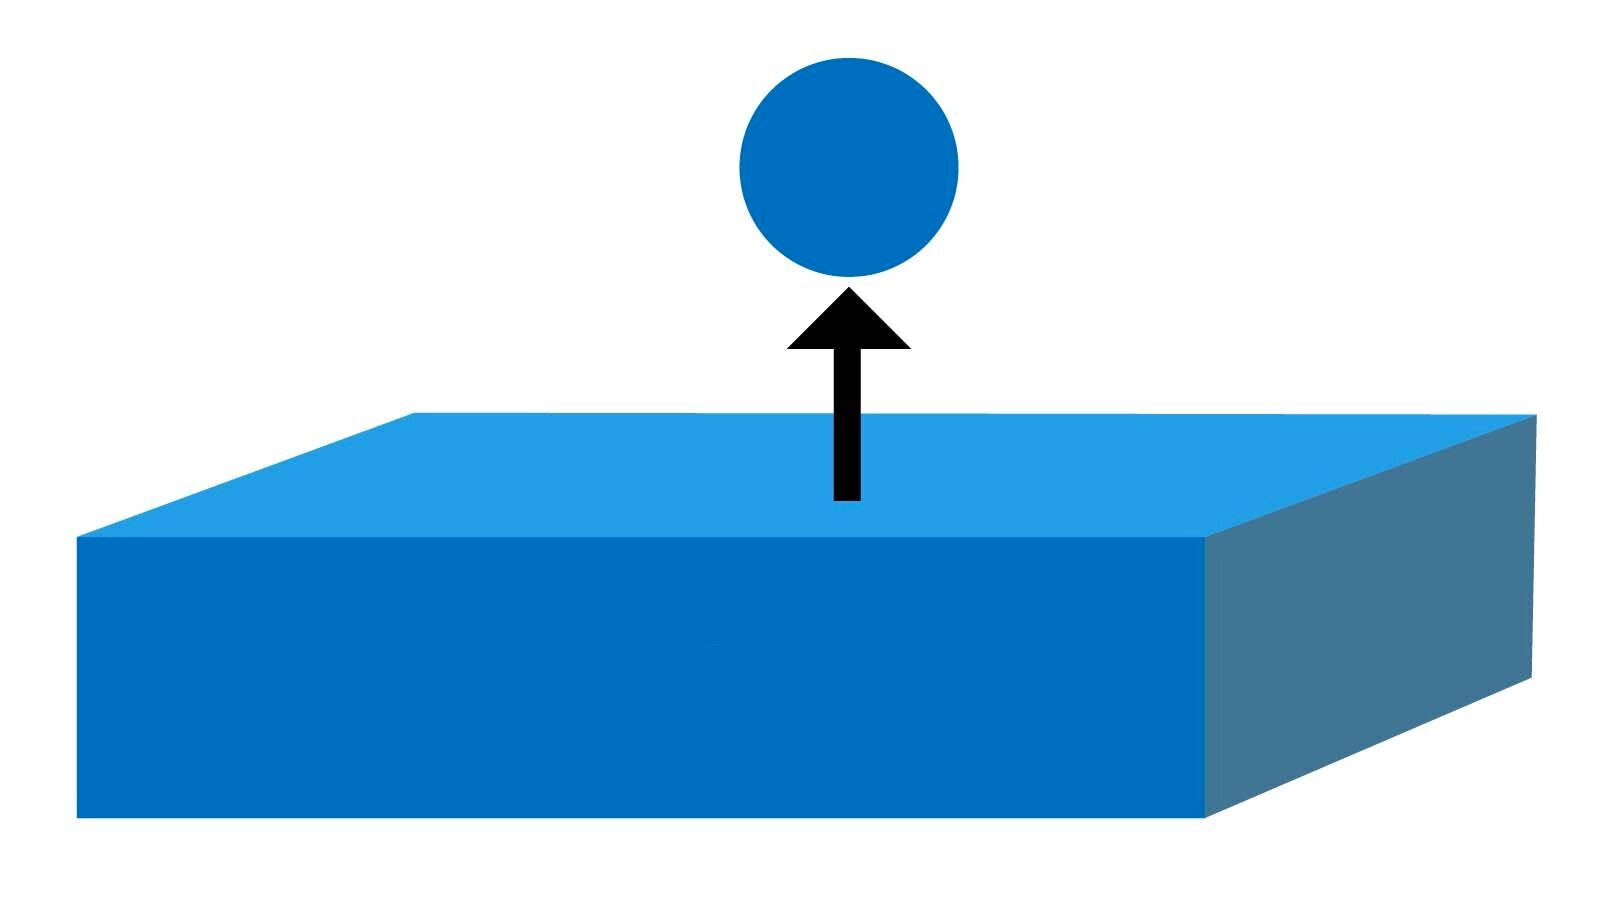 Grafika obrazuje zjawisko desorpcji. Z niebieskiej prostokątnej bryły wychodzi strzałka do góry nad którą znajduje się niebieska kula.